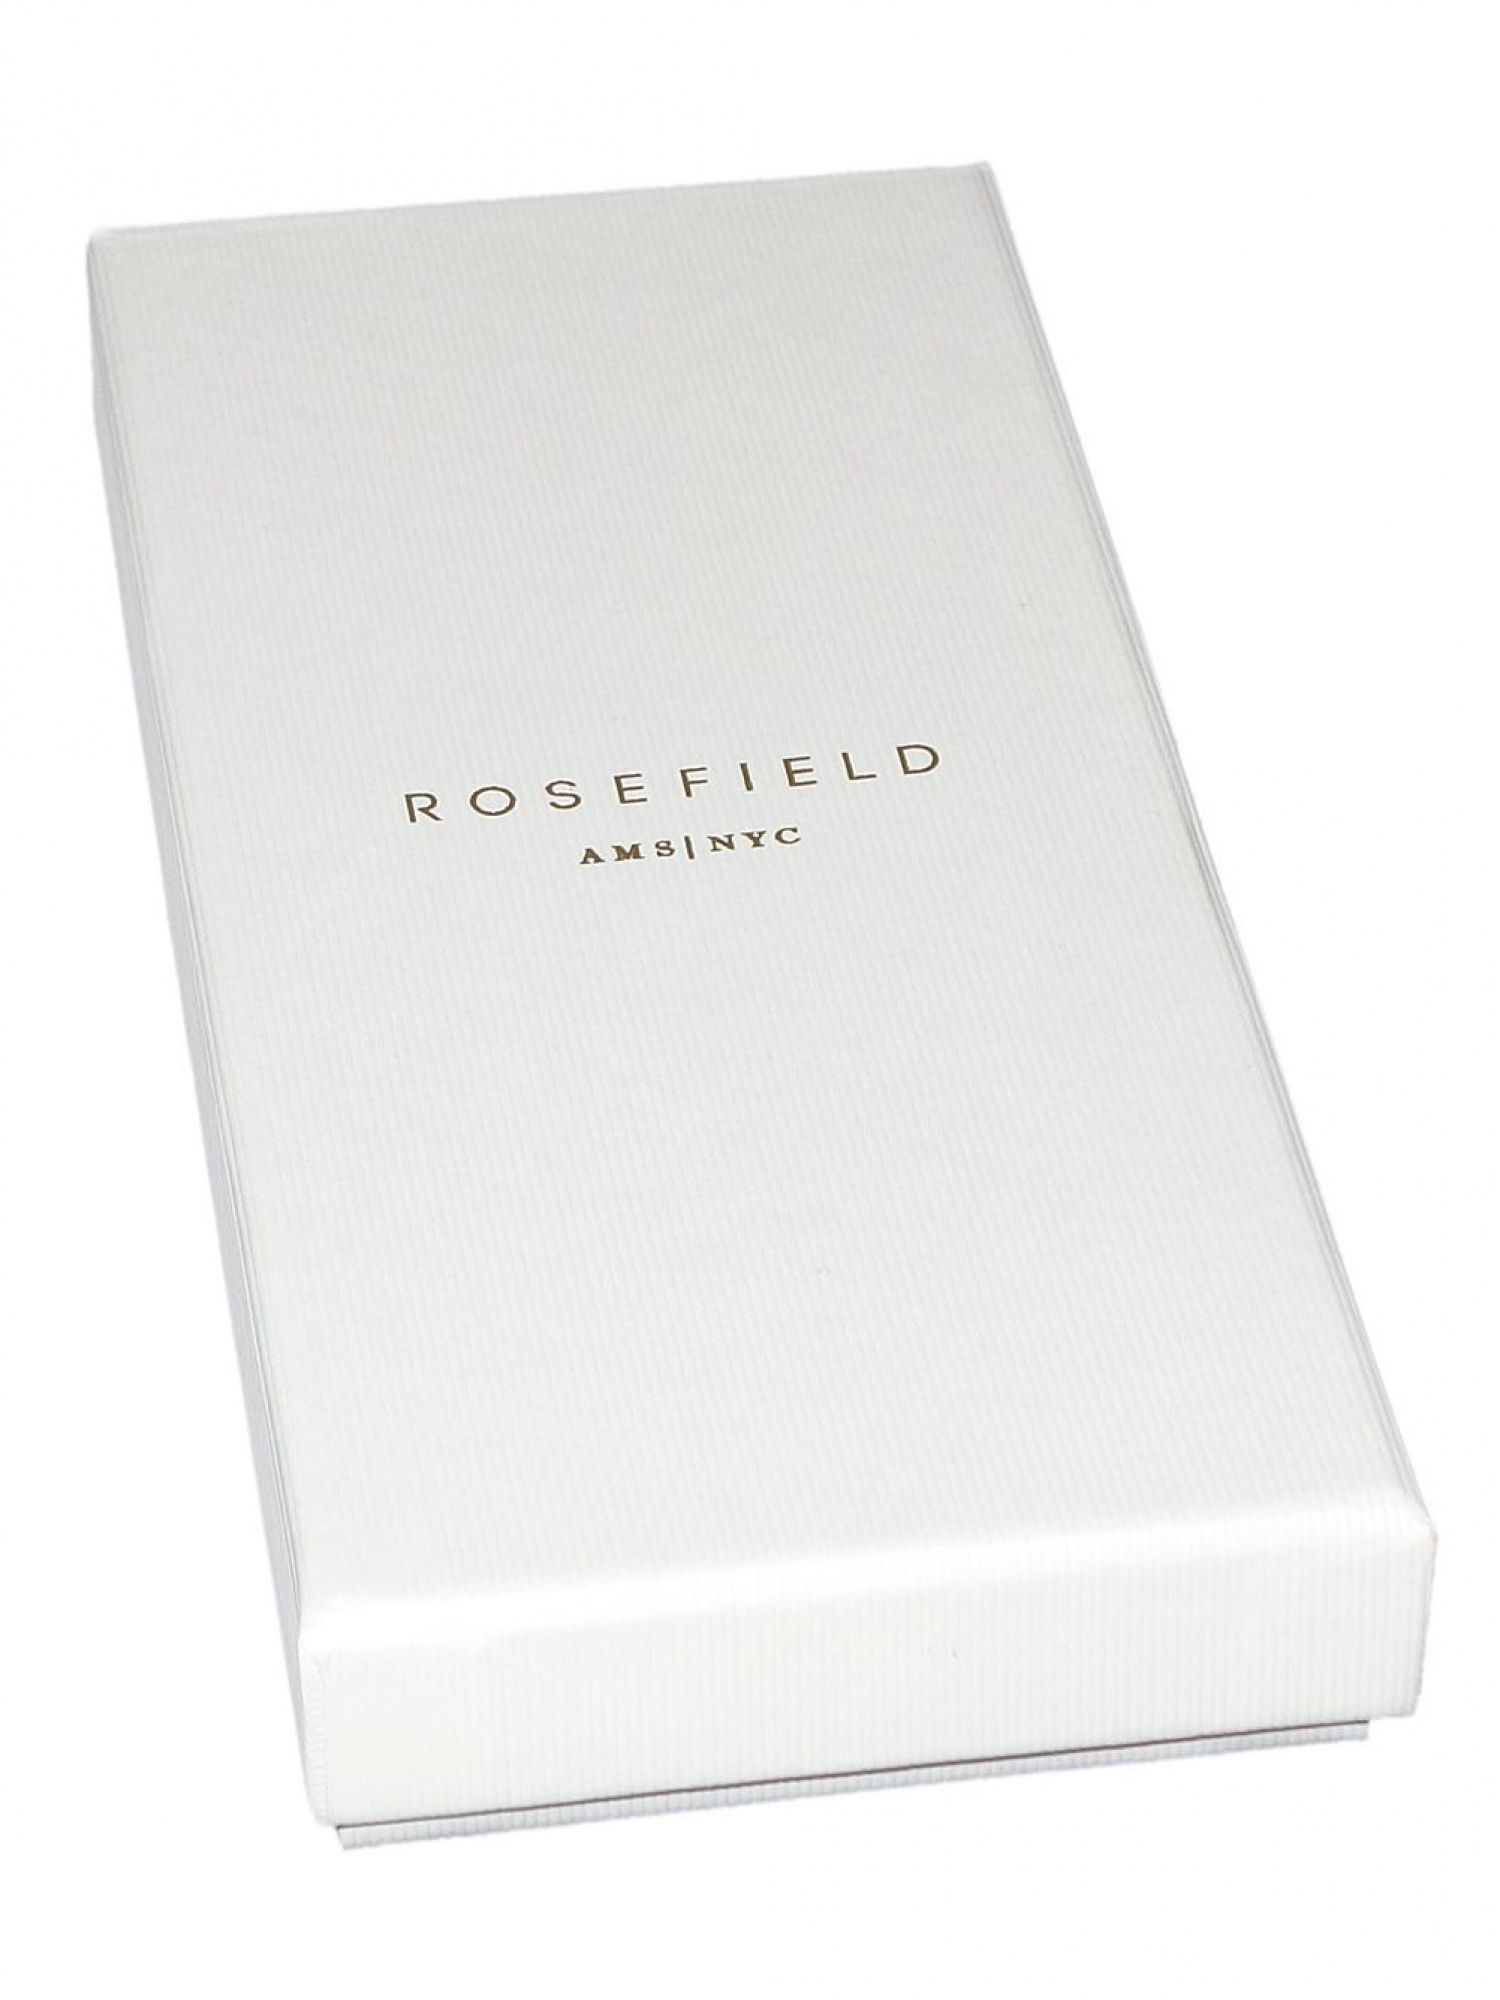 Eredeti Rosefield csomagolás